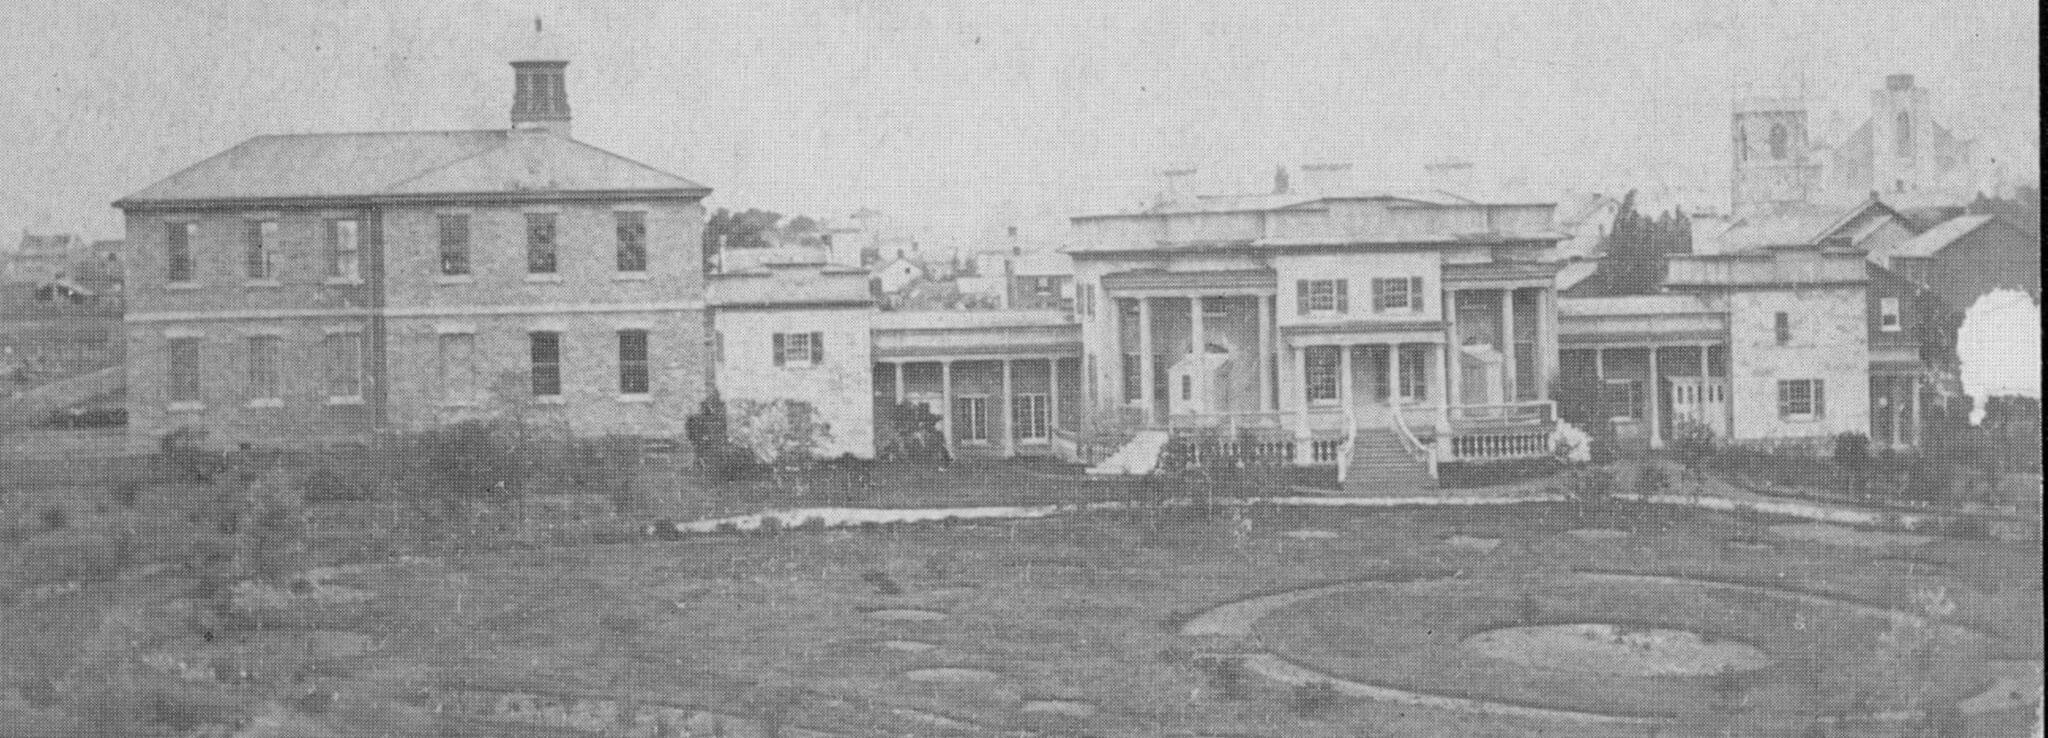 Summerhill in 1868